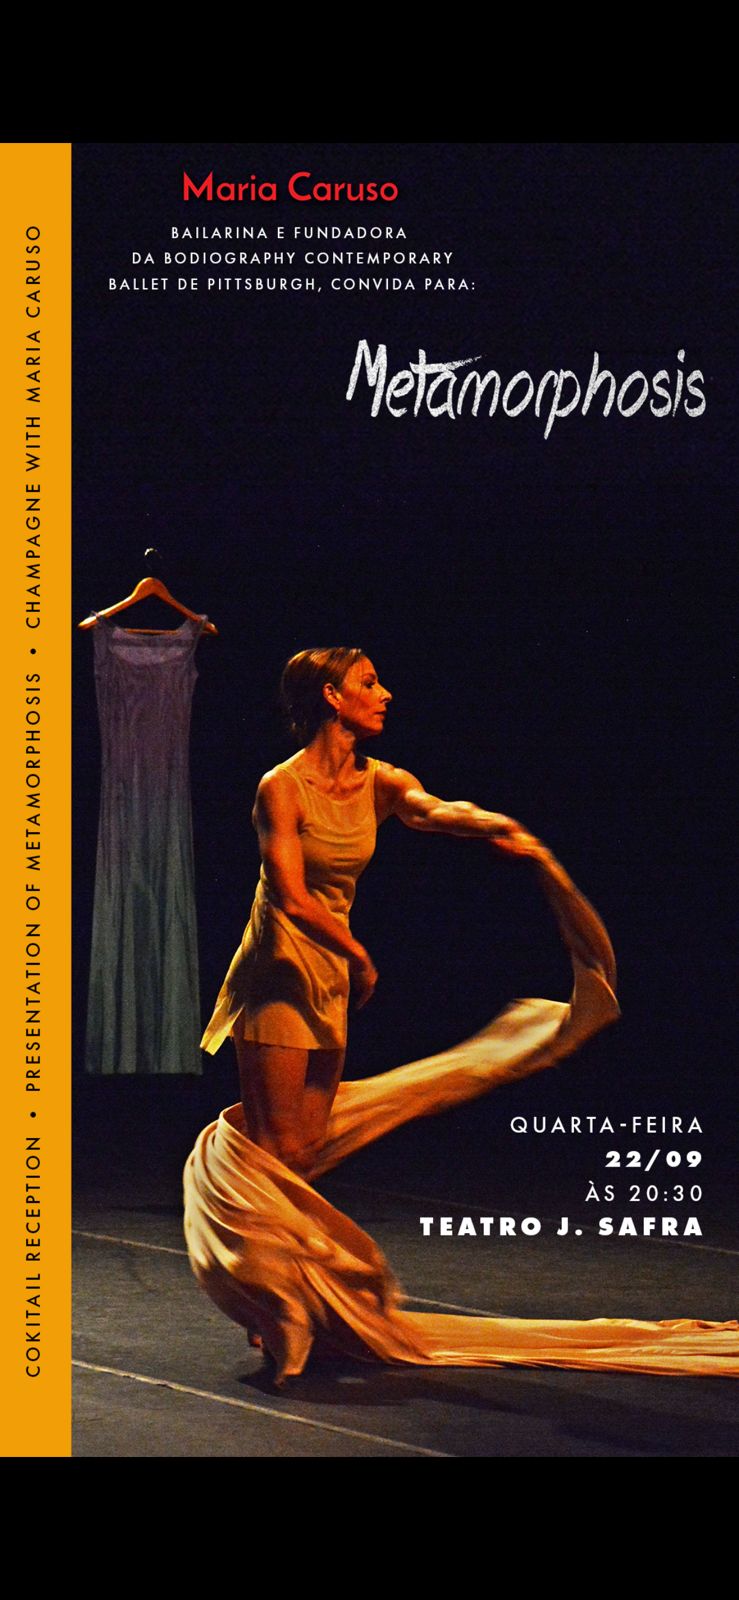 Maria Caruso na apresentação do coquetel do Ballet Metamorphosis. Em destaque aqui na Portfólio Vip